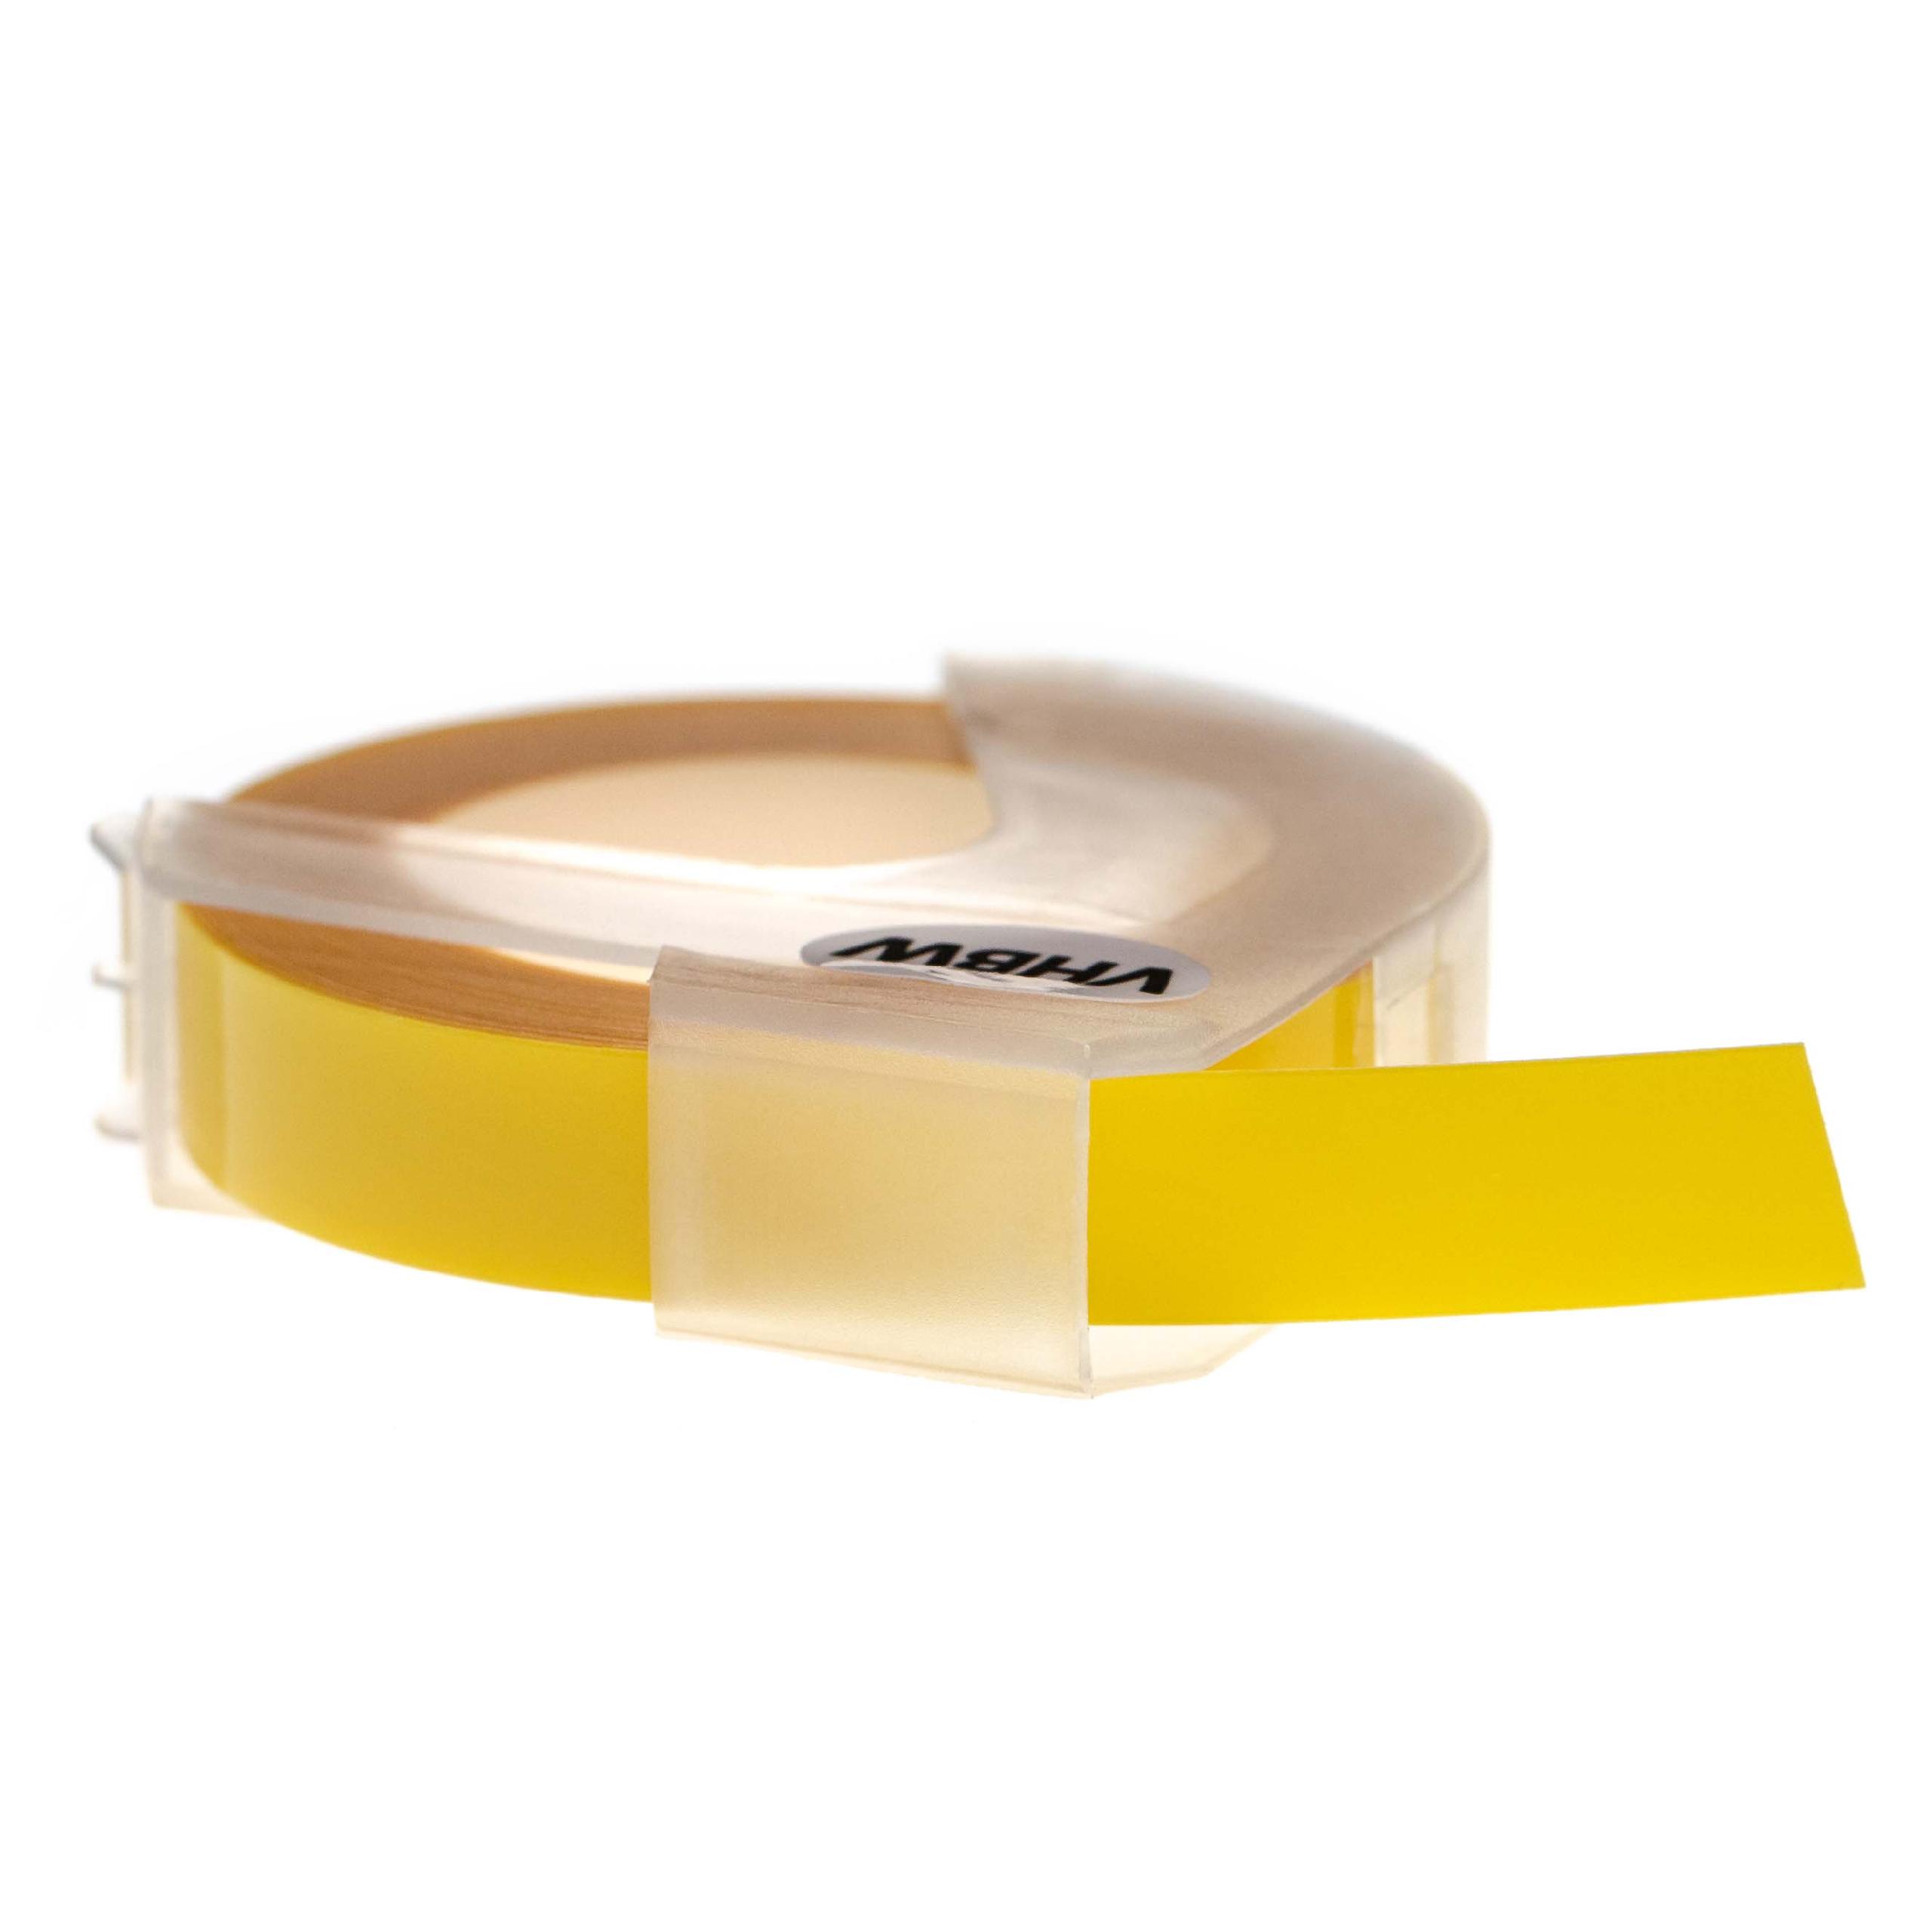 Casete cinta relieve 3D Casete cinta escritura reemplaza Dymo 0898220, S0898220 Blanco su Amarillo claro